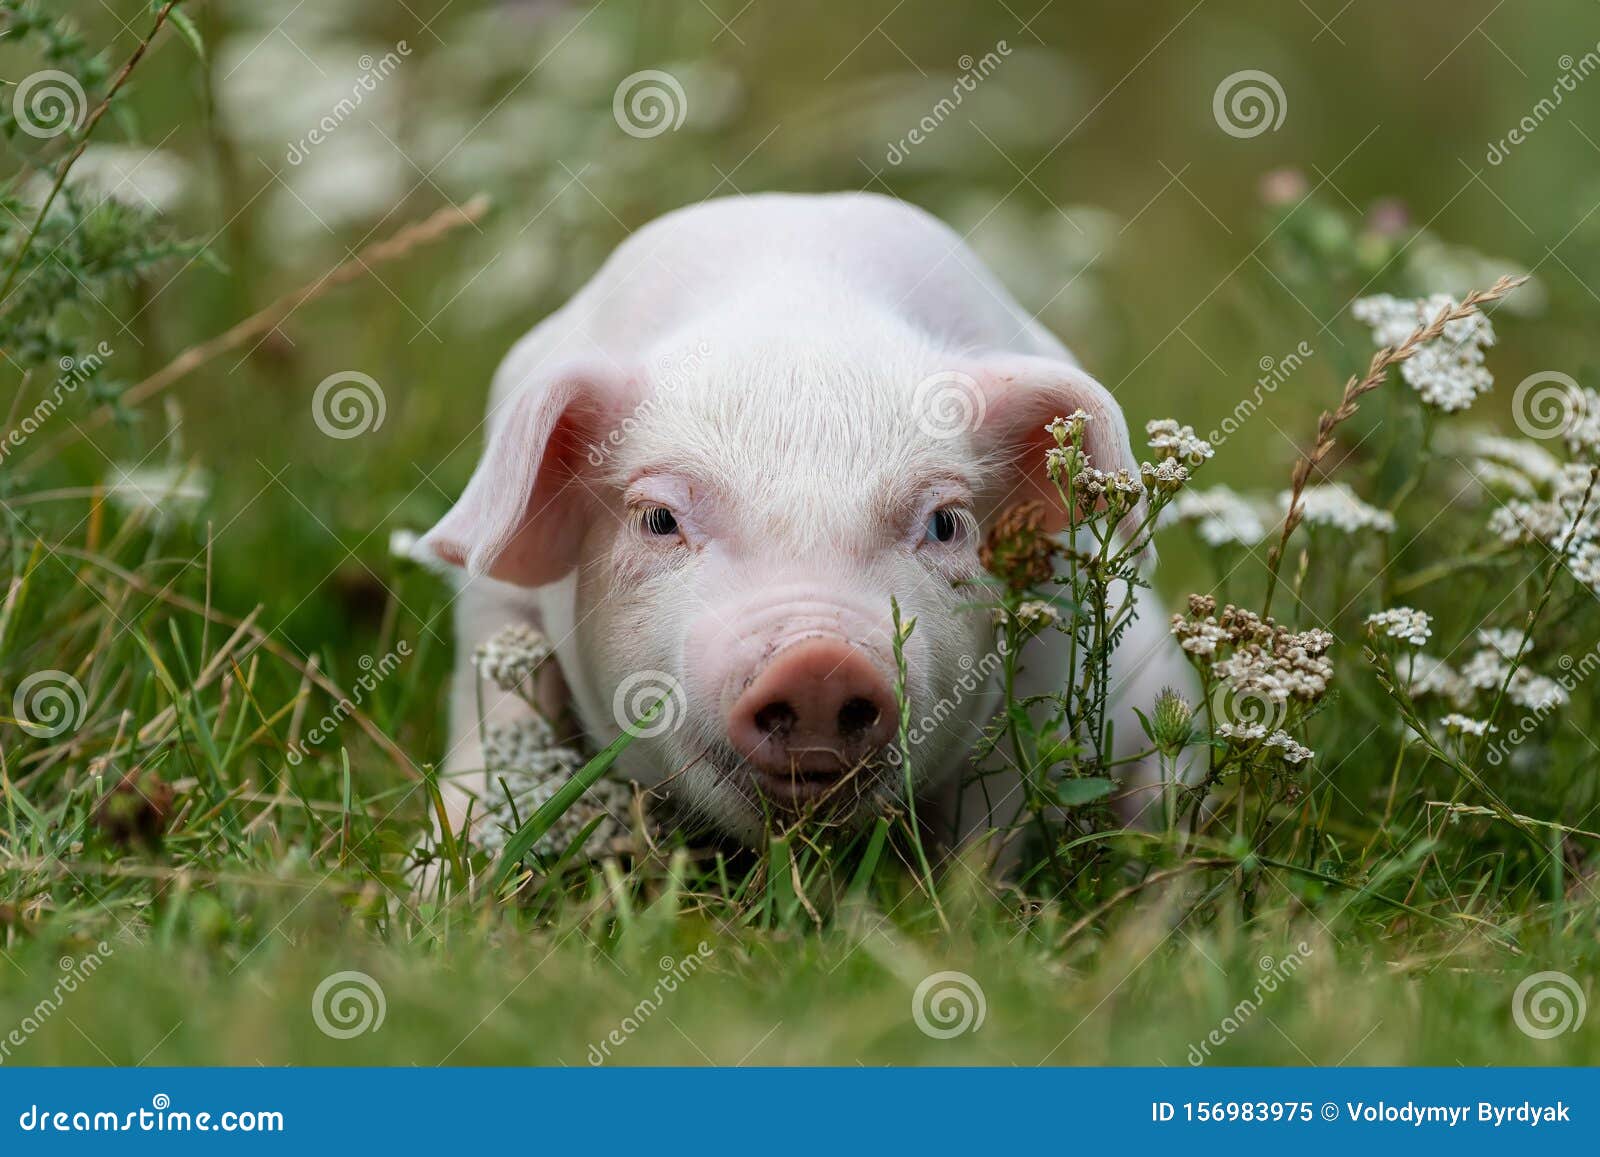 176 Lustige Schweine Fotos Kostenlose Und Royalty Free Stock Fotos Von Dreamstime